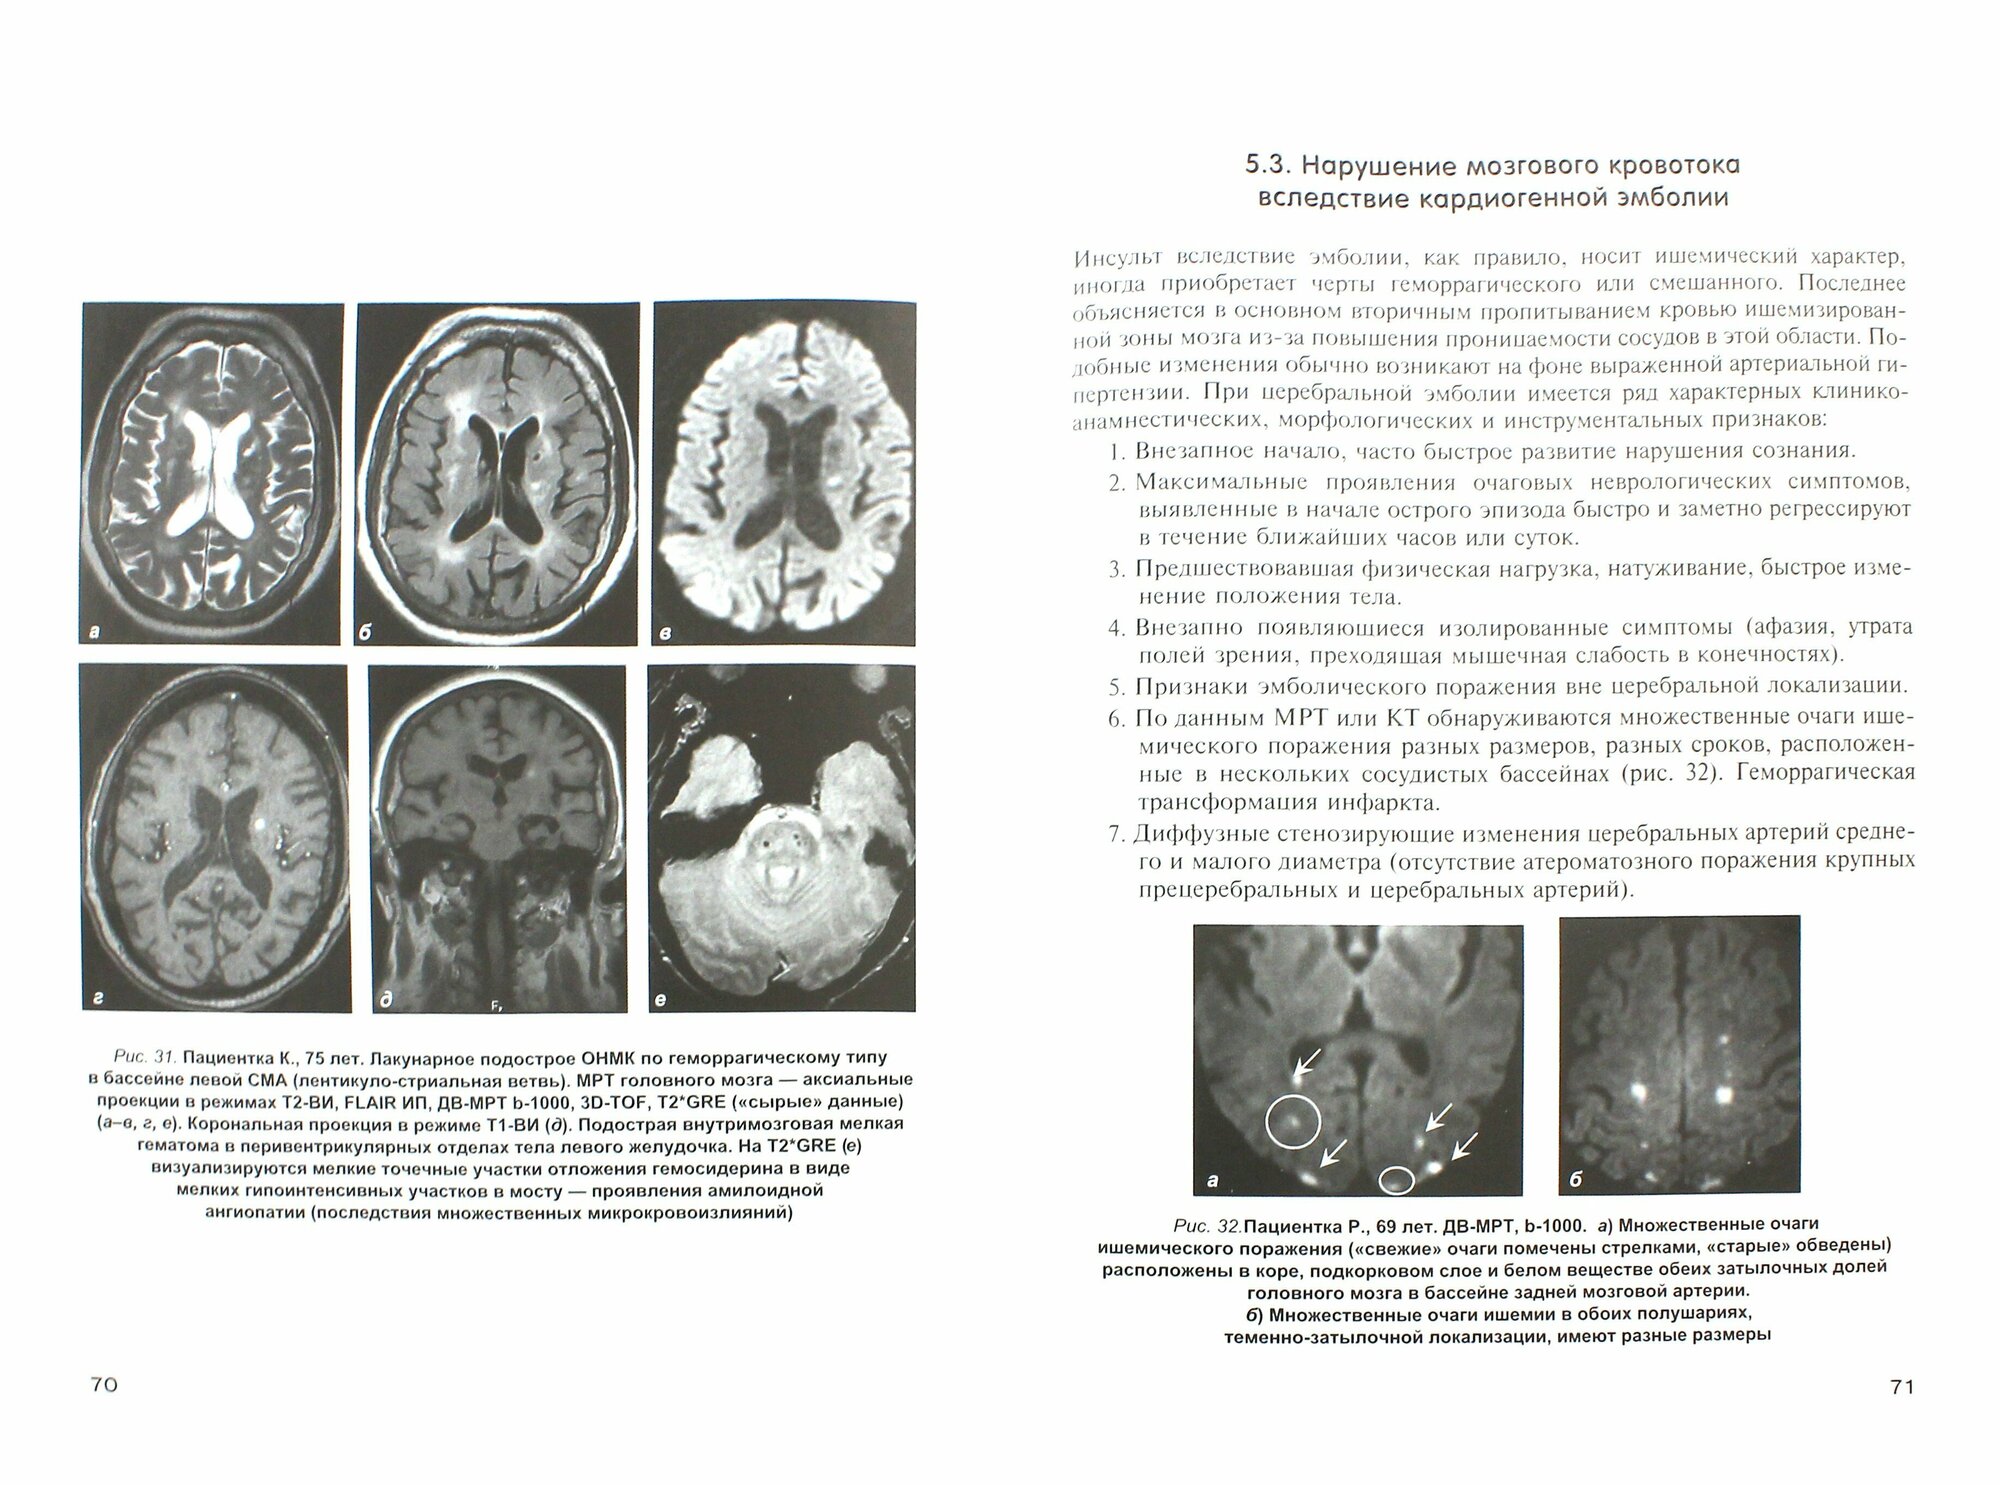 Неотложная клиническая нейрорадиология. Инсульт - фото №2